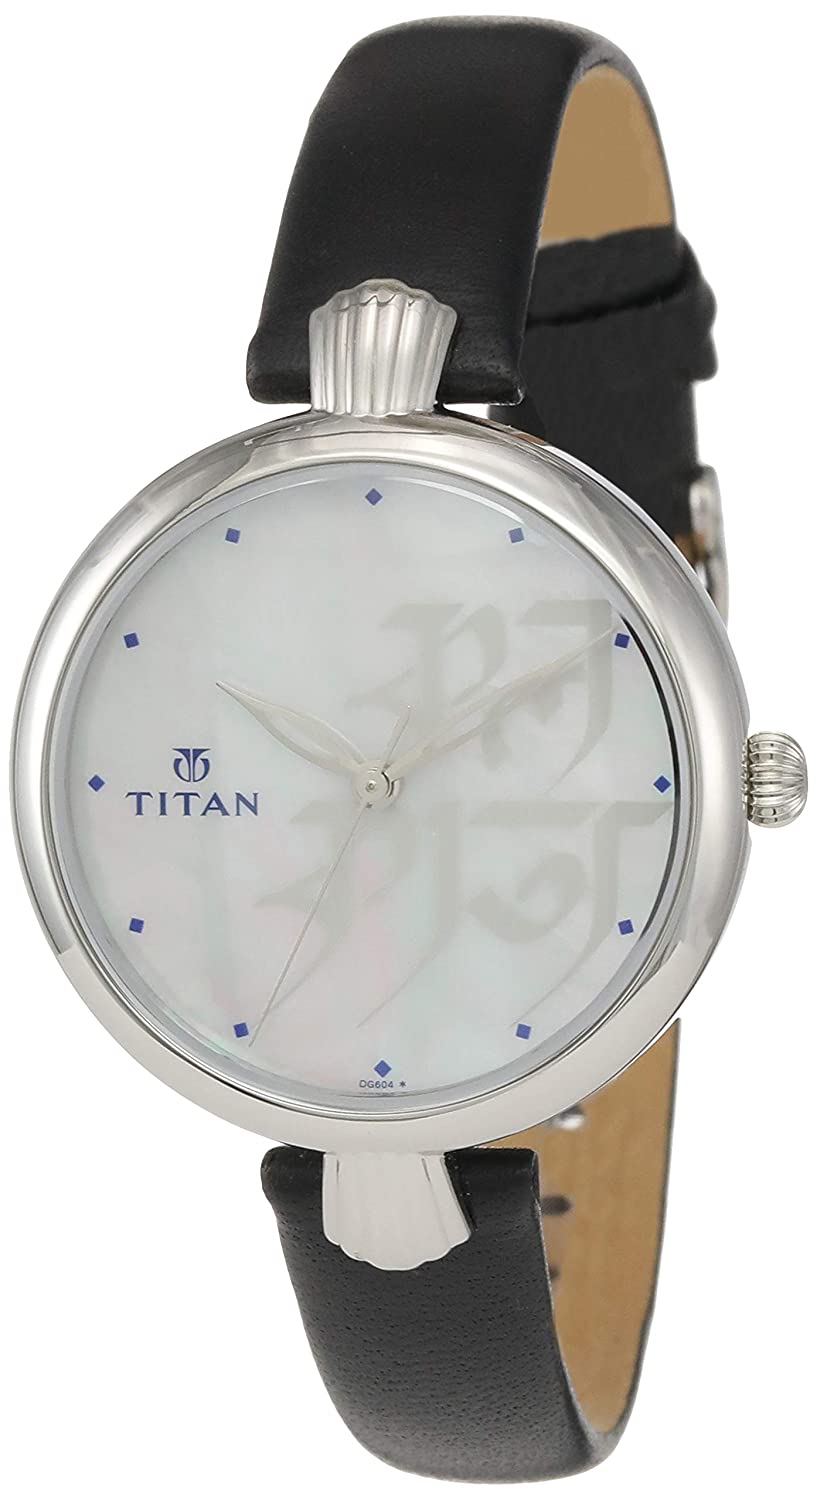 Titan Forever Kolkata (Analog White Dial Watch)